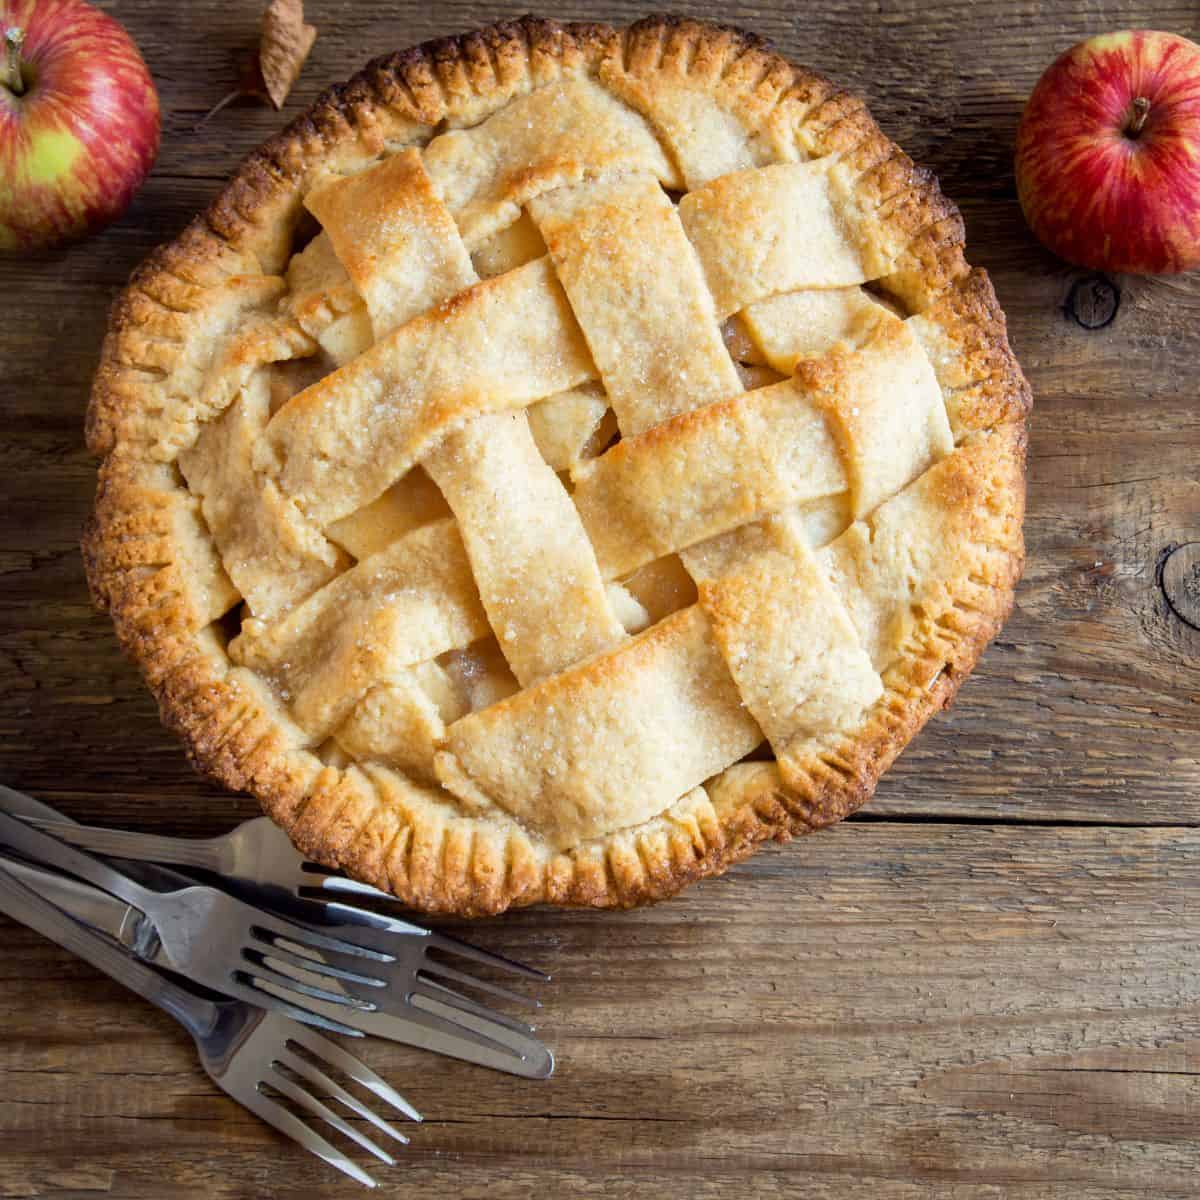 Apple Pie with lattice crust